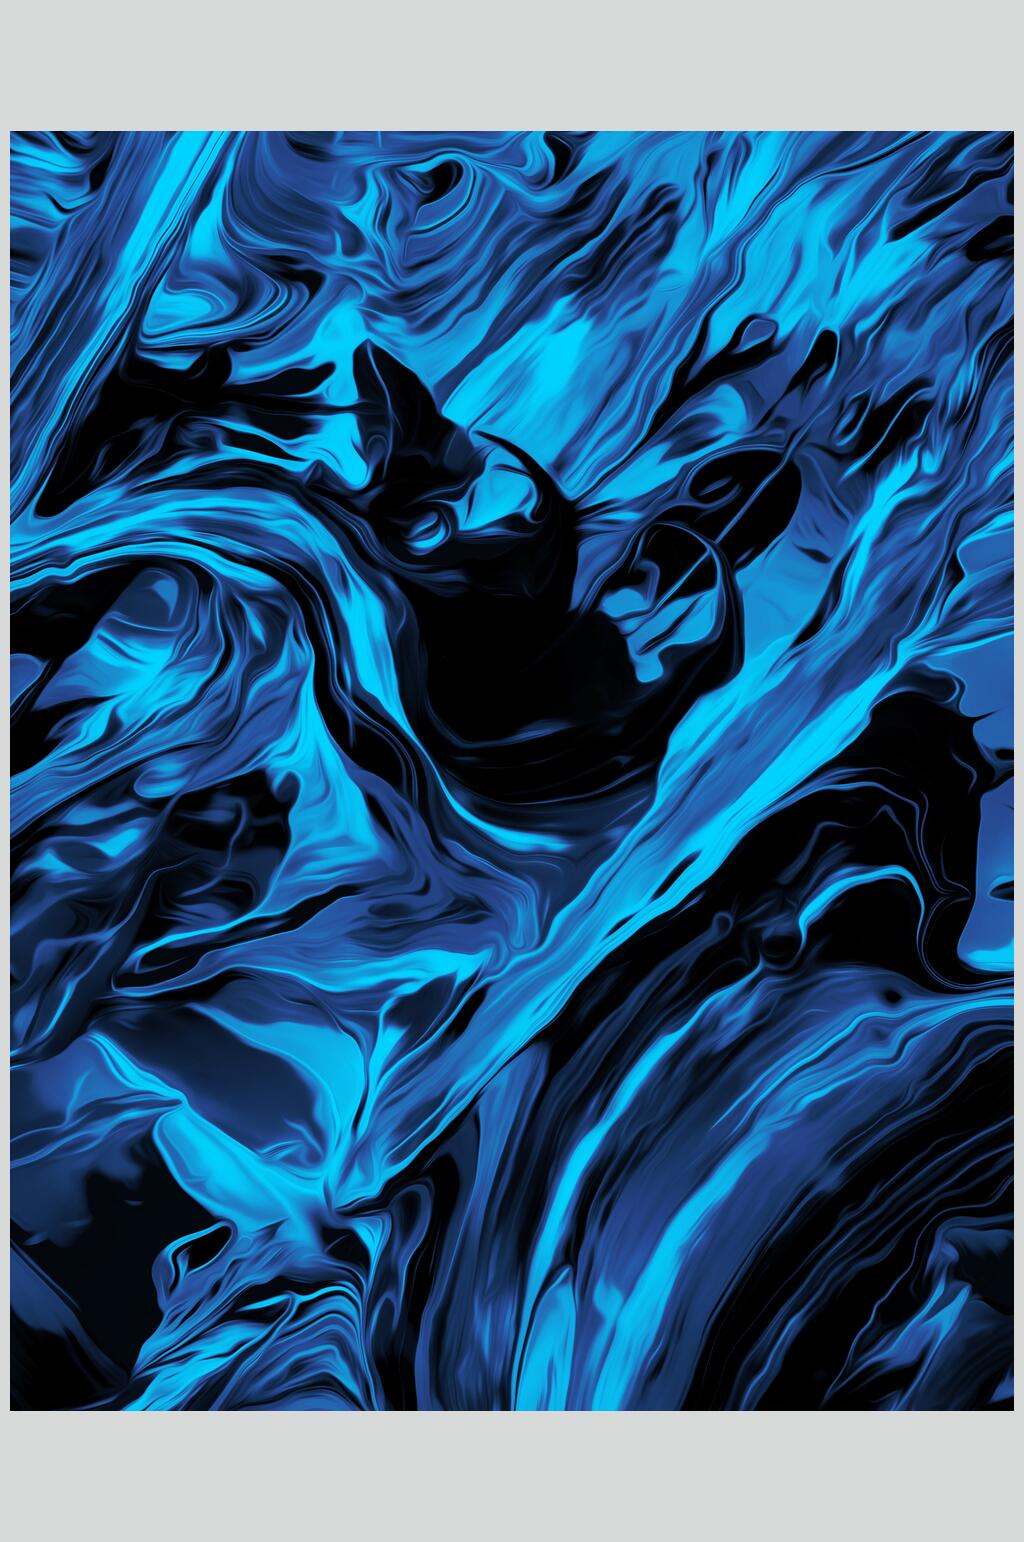 众图网独家提供原创蓝色冷色调贴图图片素材免费下载,本作品是由刘丫